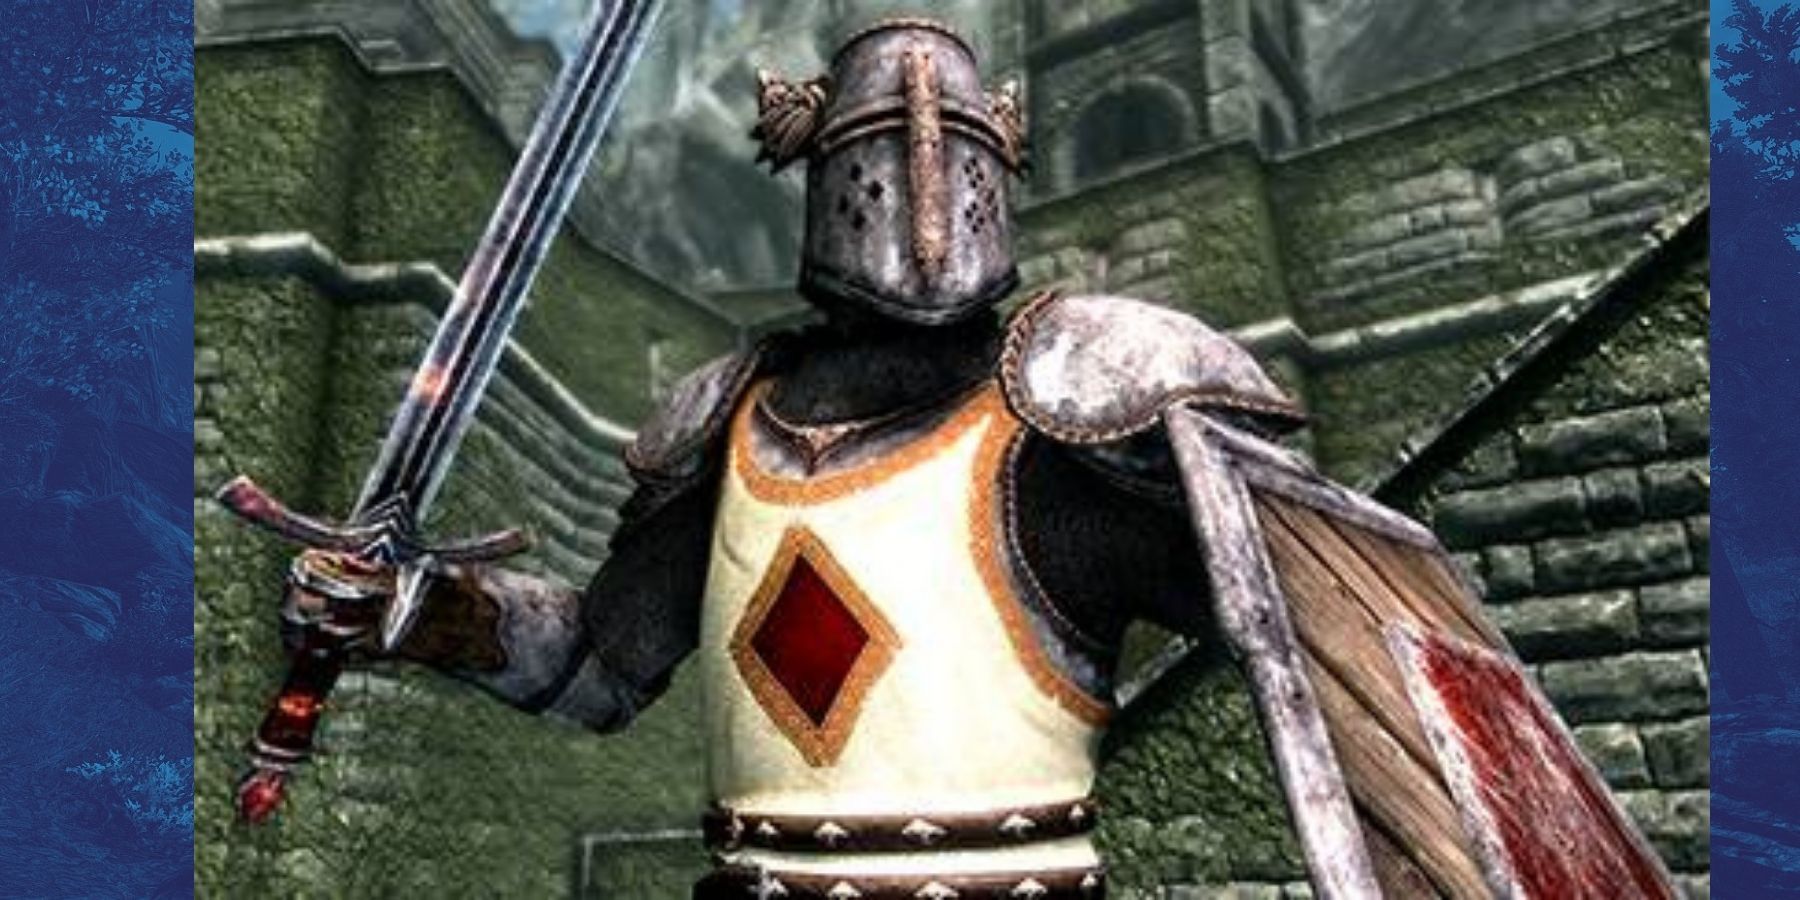 Skyrim Divine Crusader heavy armor set